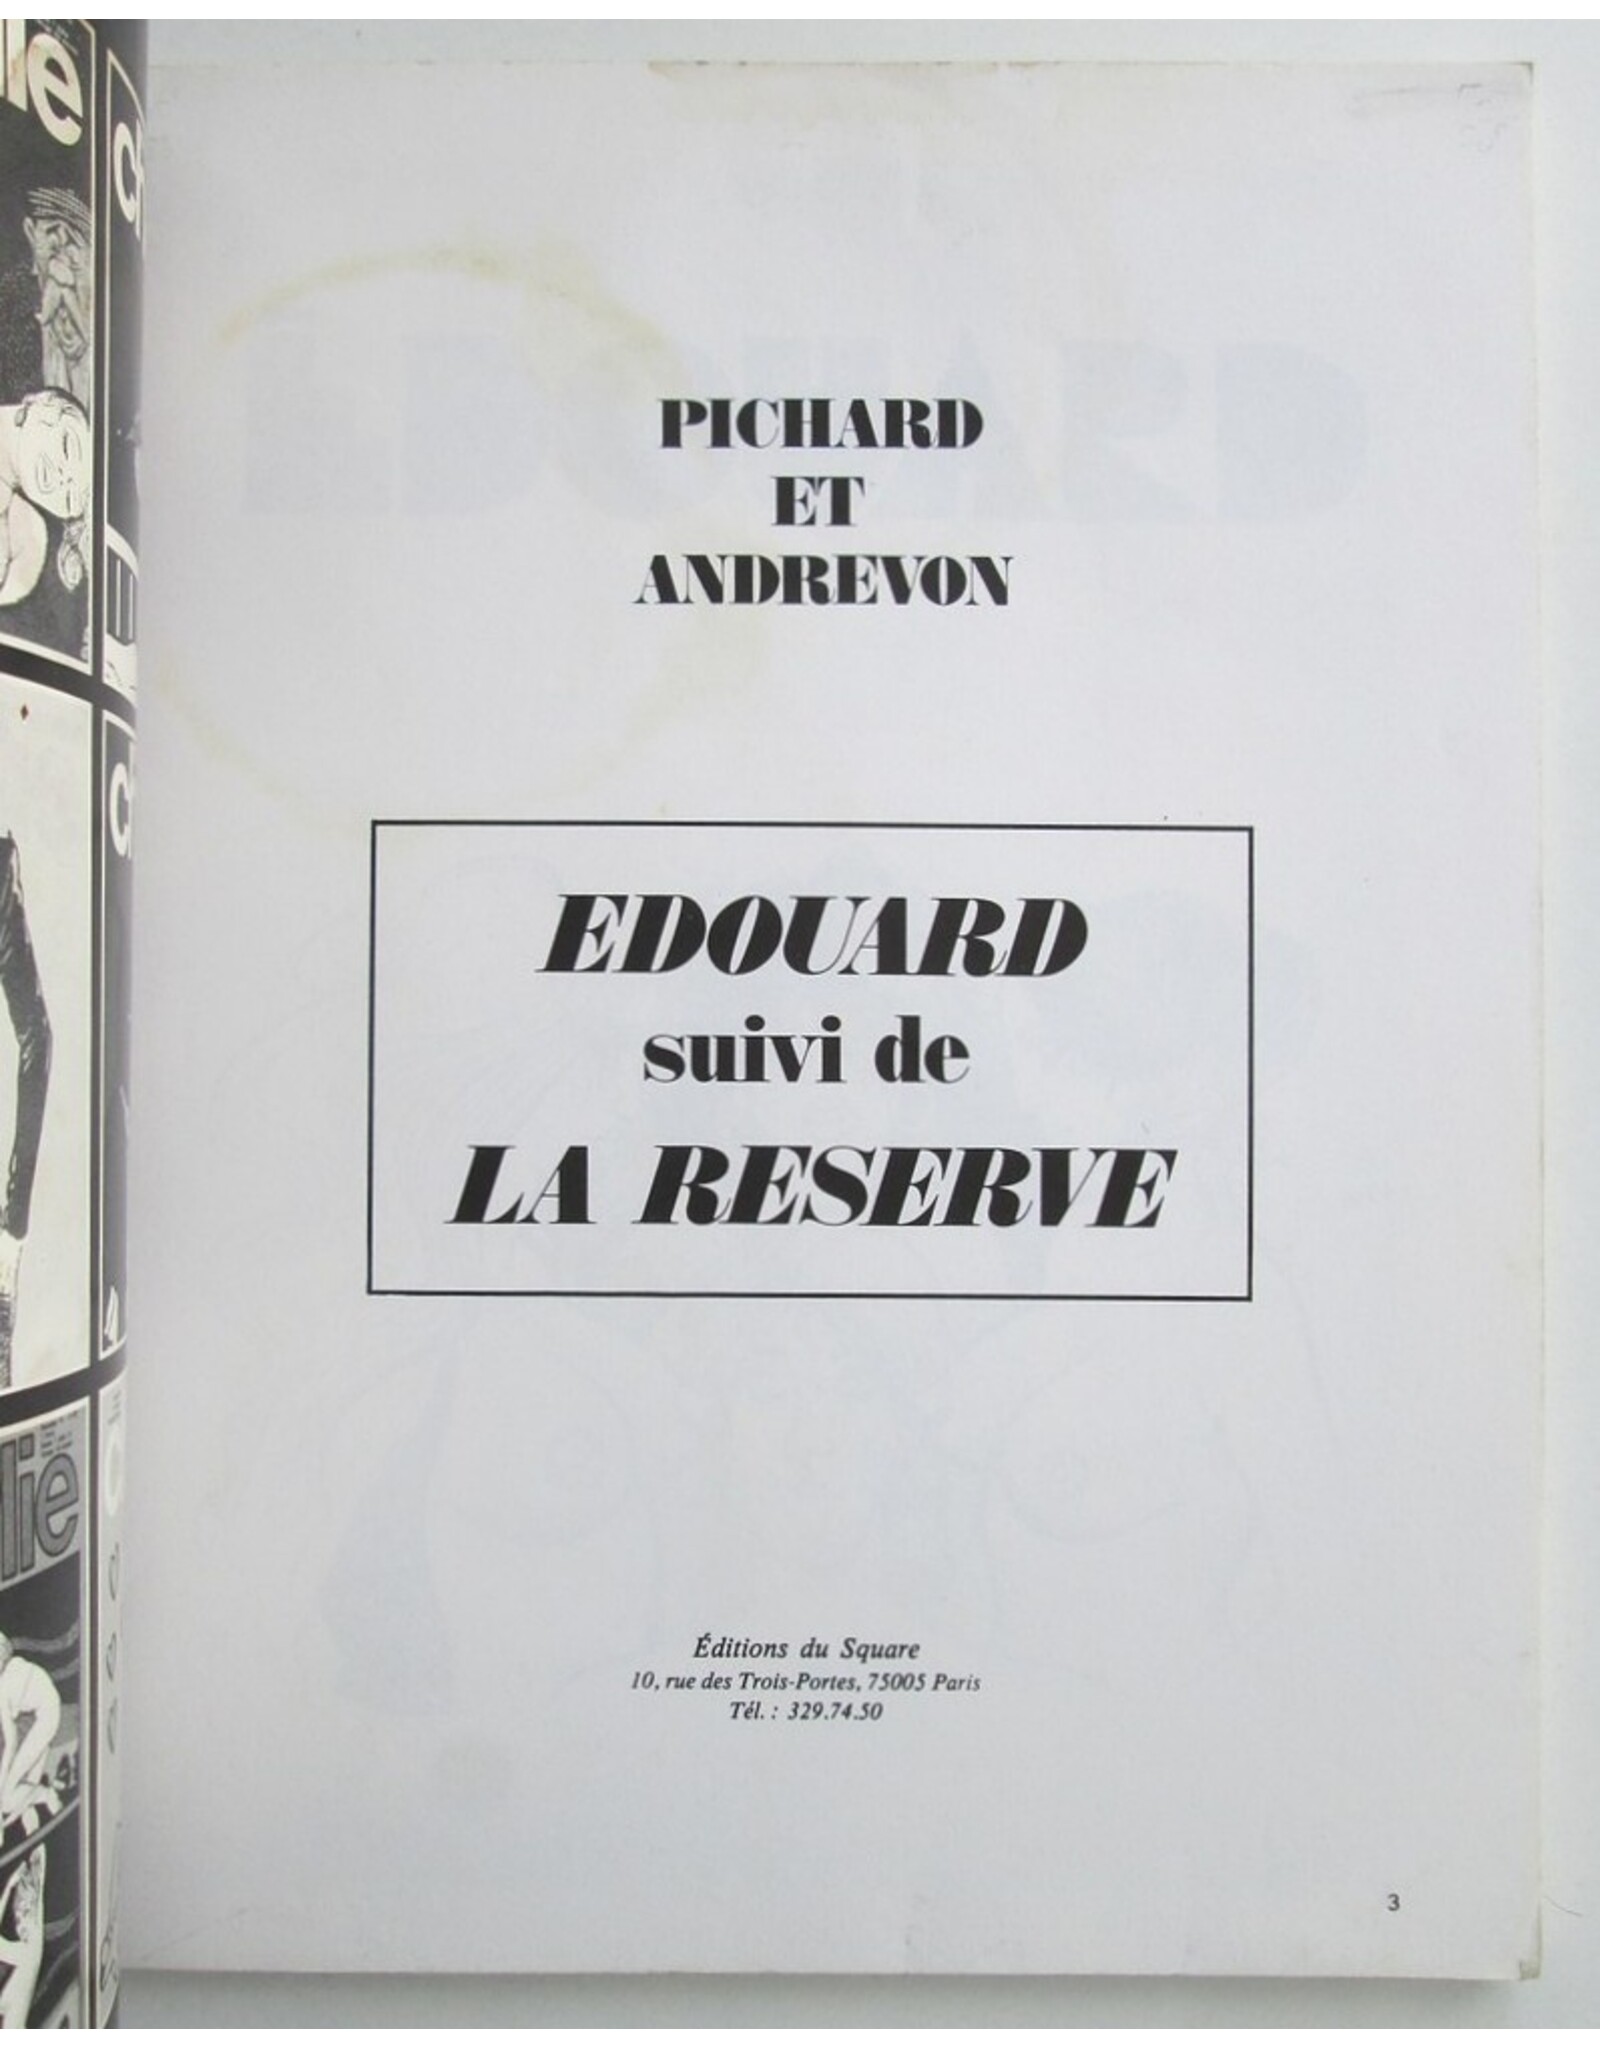 Pichard & Andrevon - Édouard suivi de La réserve